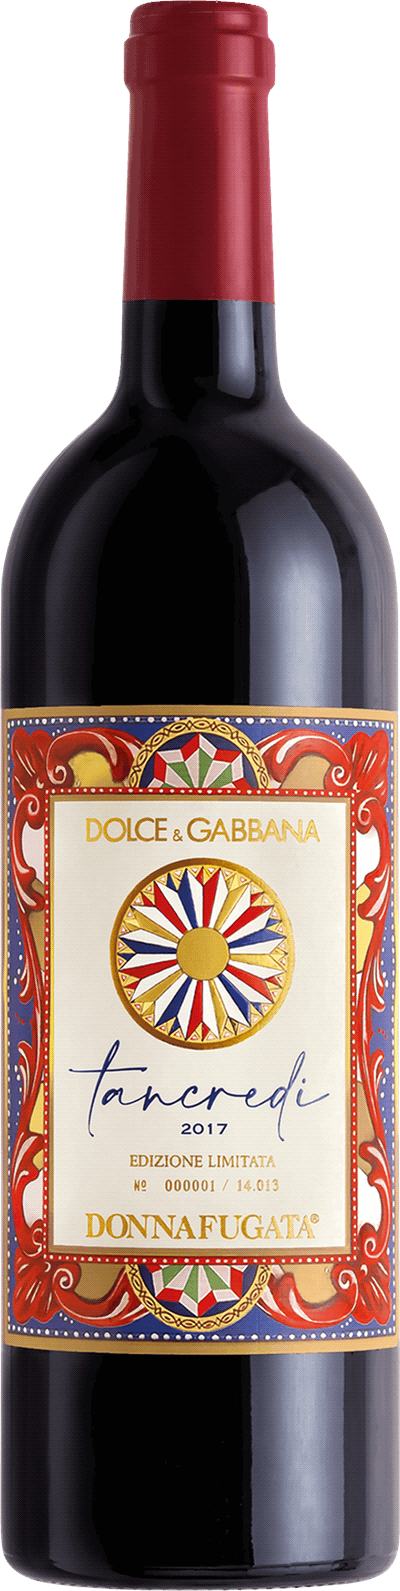 Tancredi Dolce & Gabbana